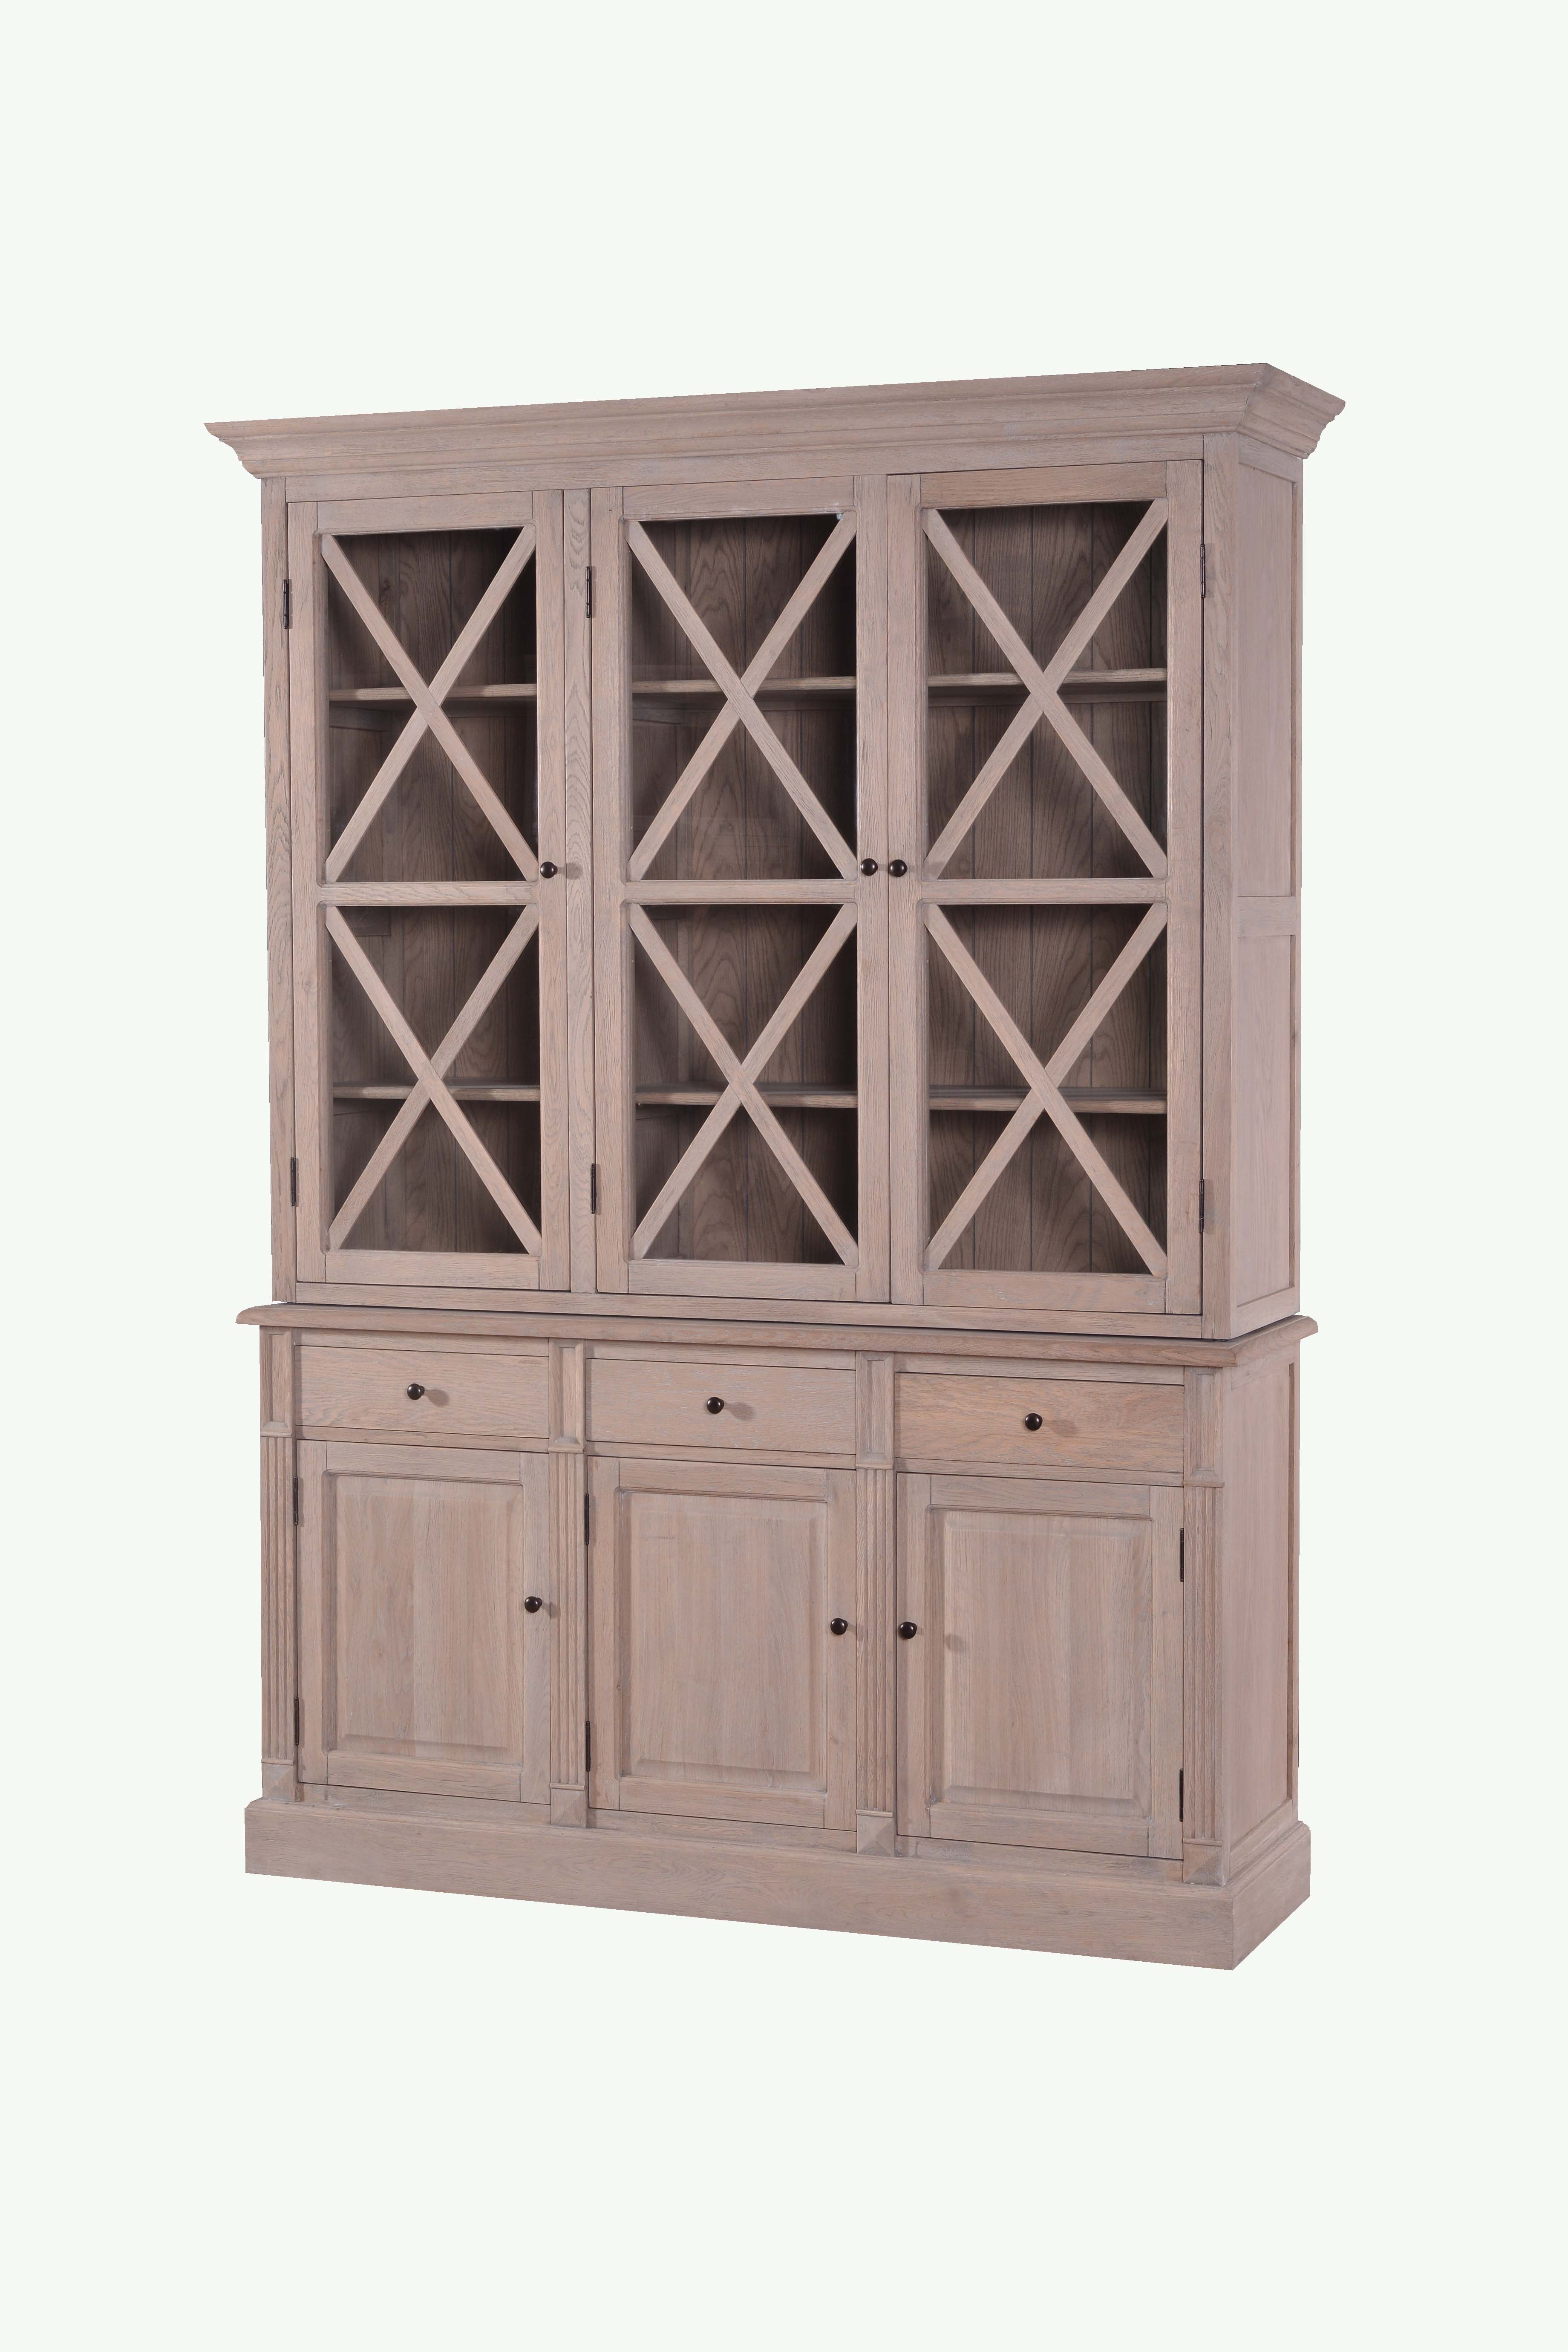 MD08-194-Oak veneer display cabinet